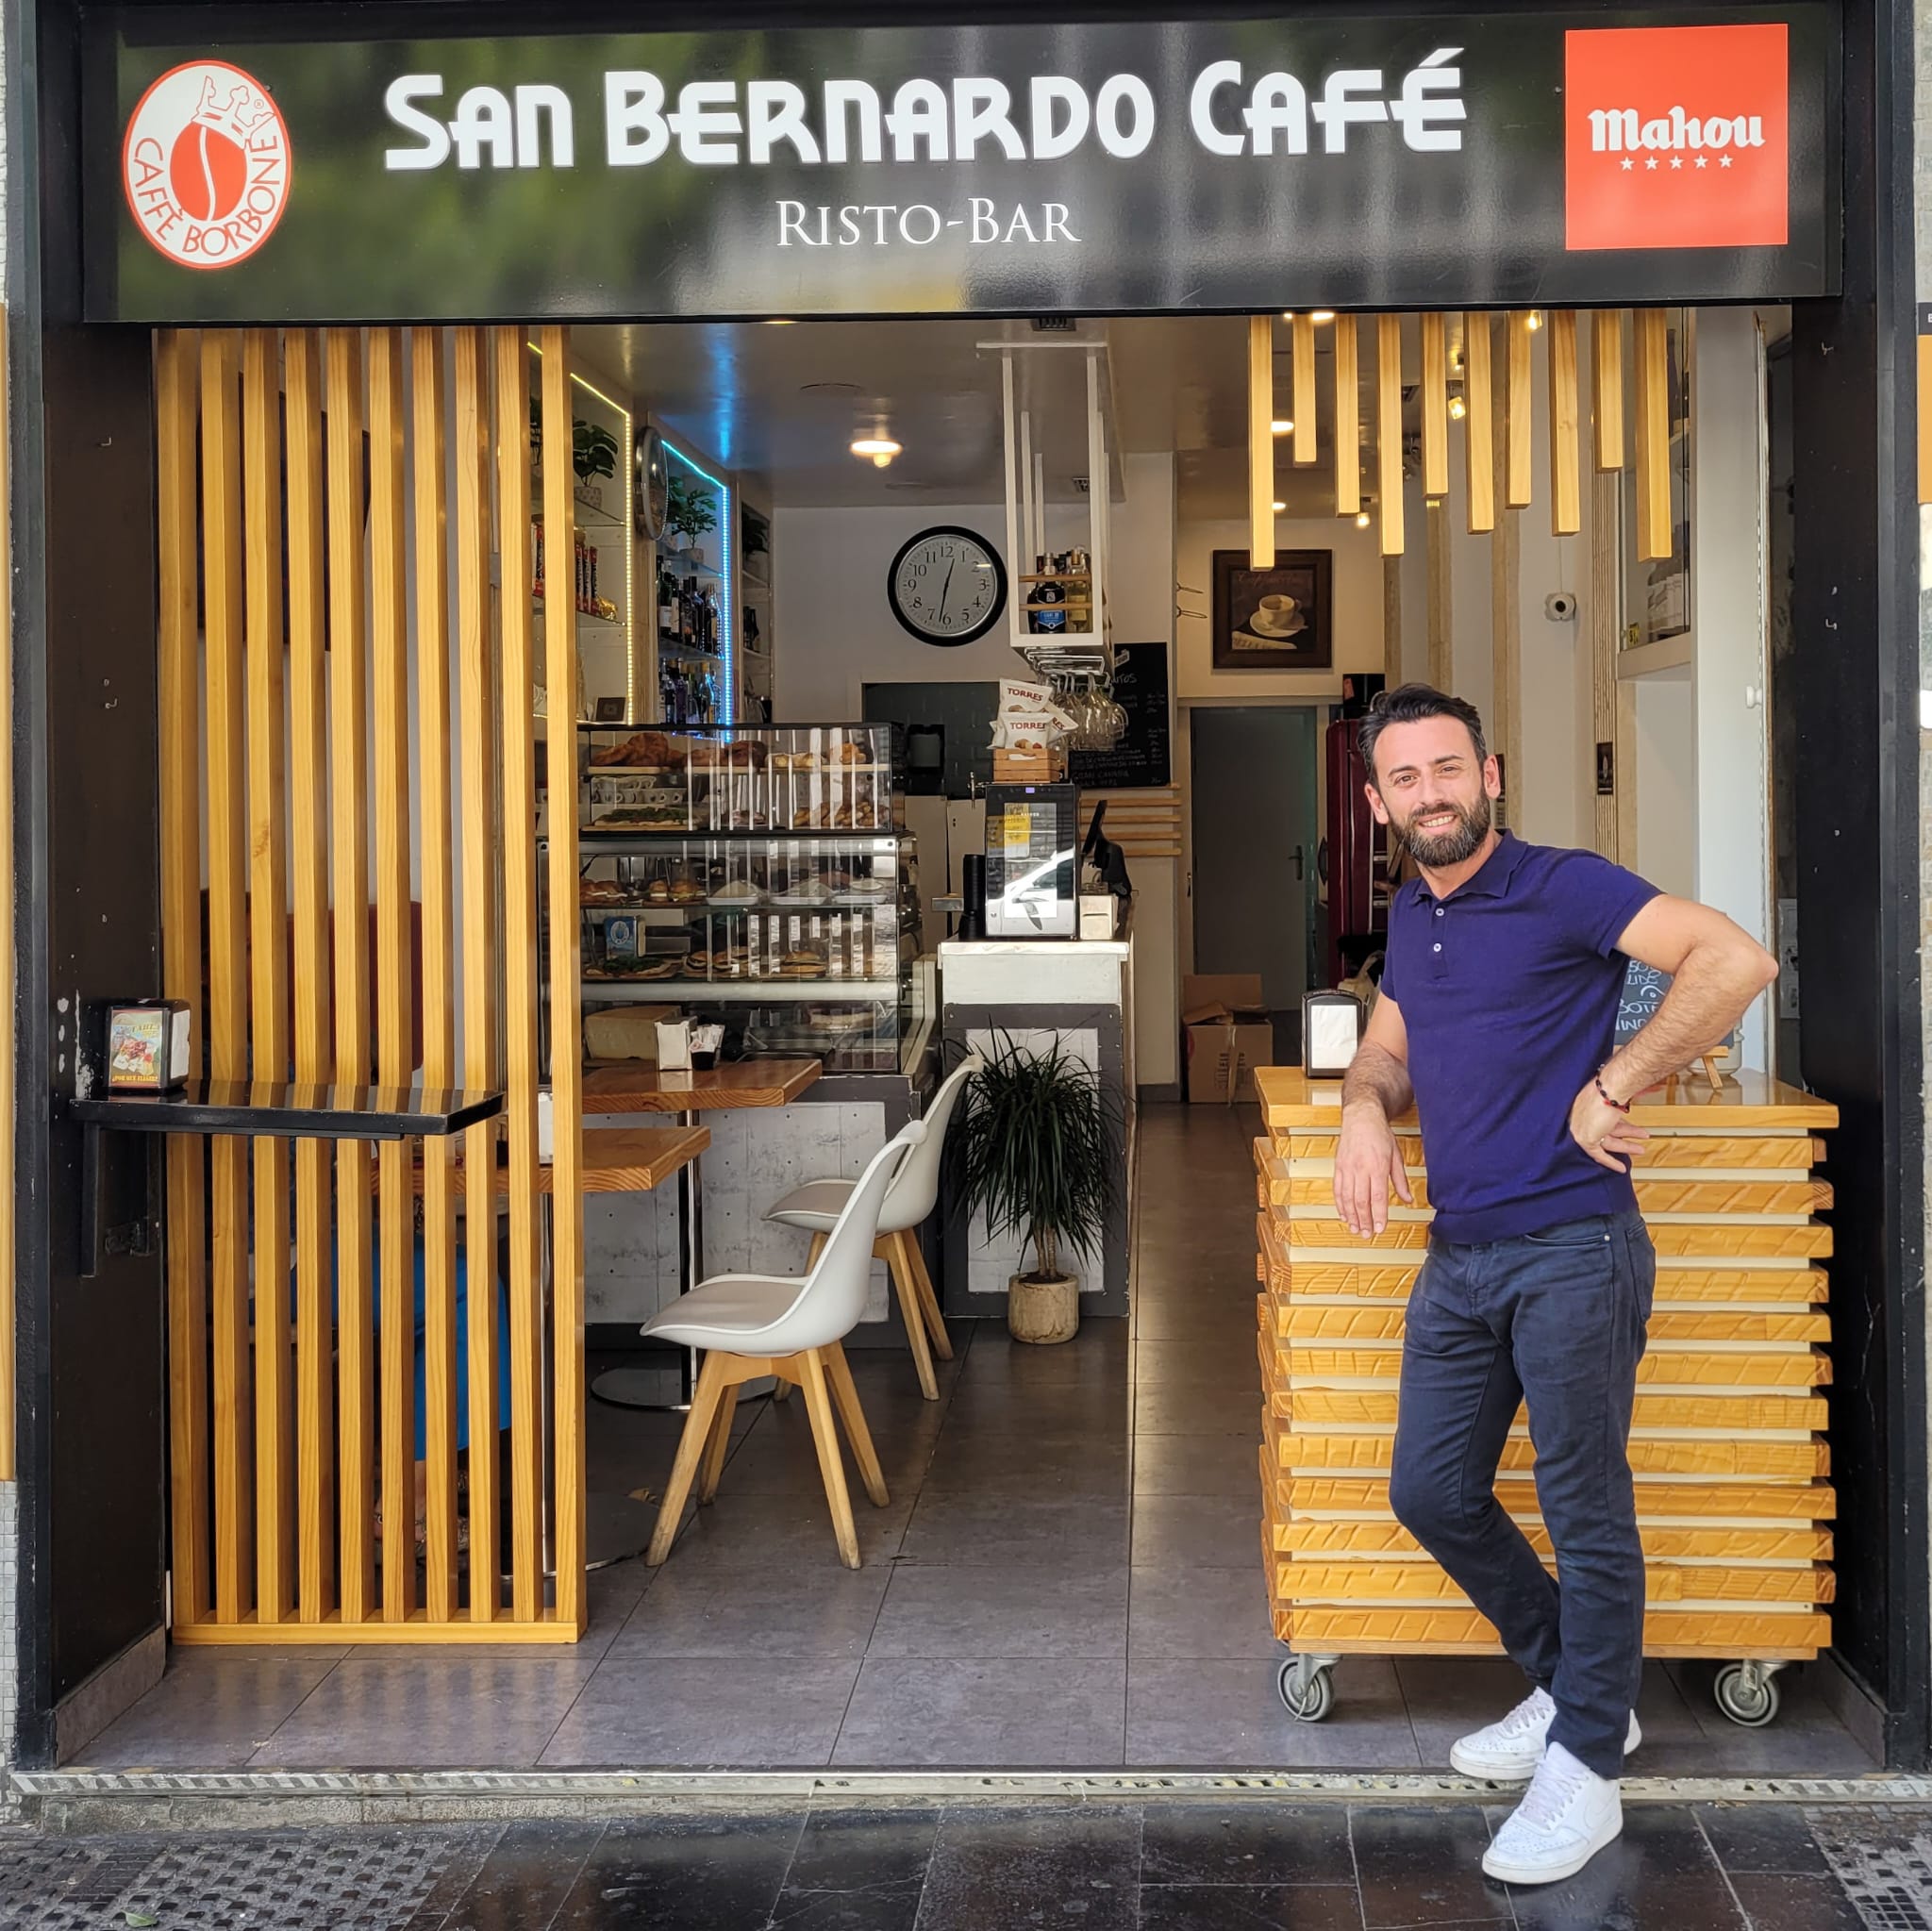 San Bernardo Café